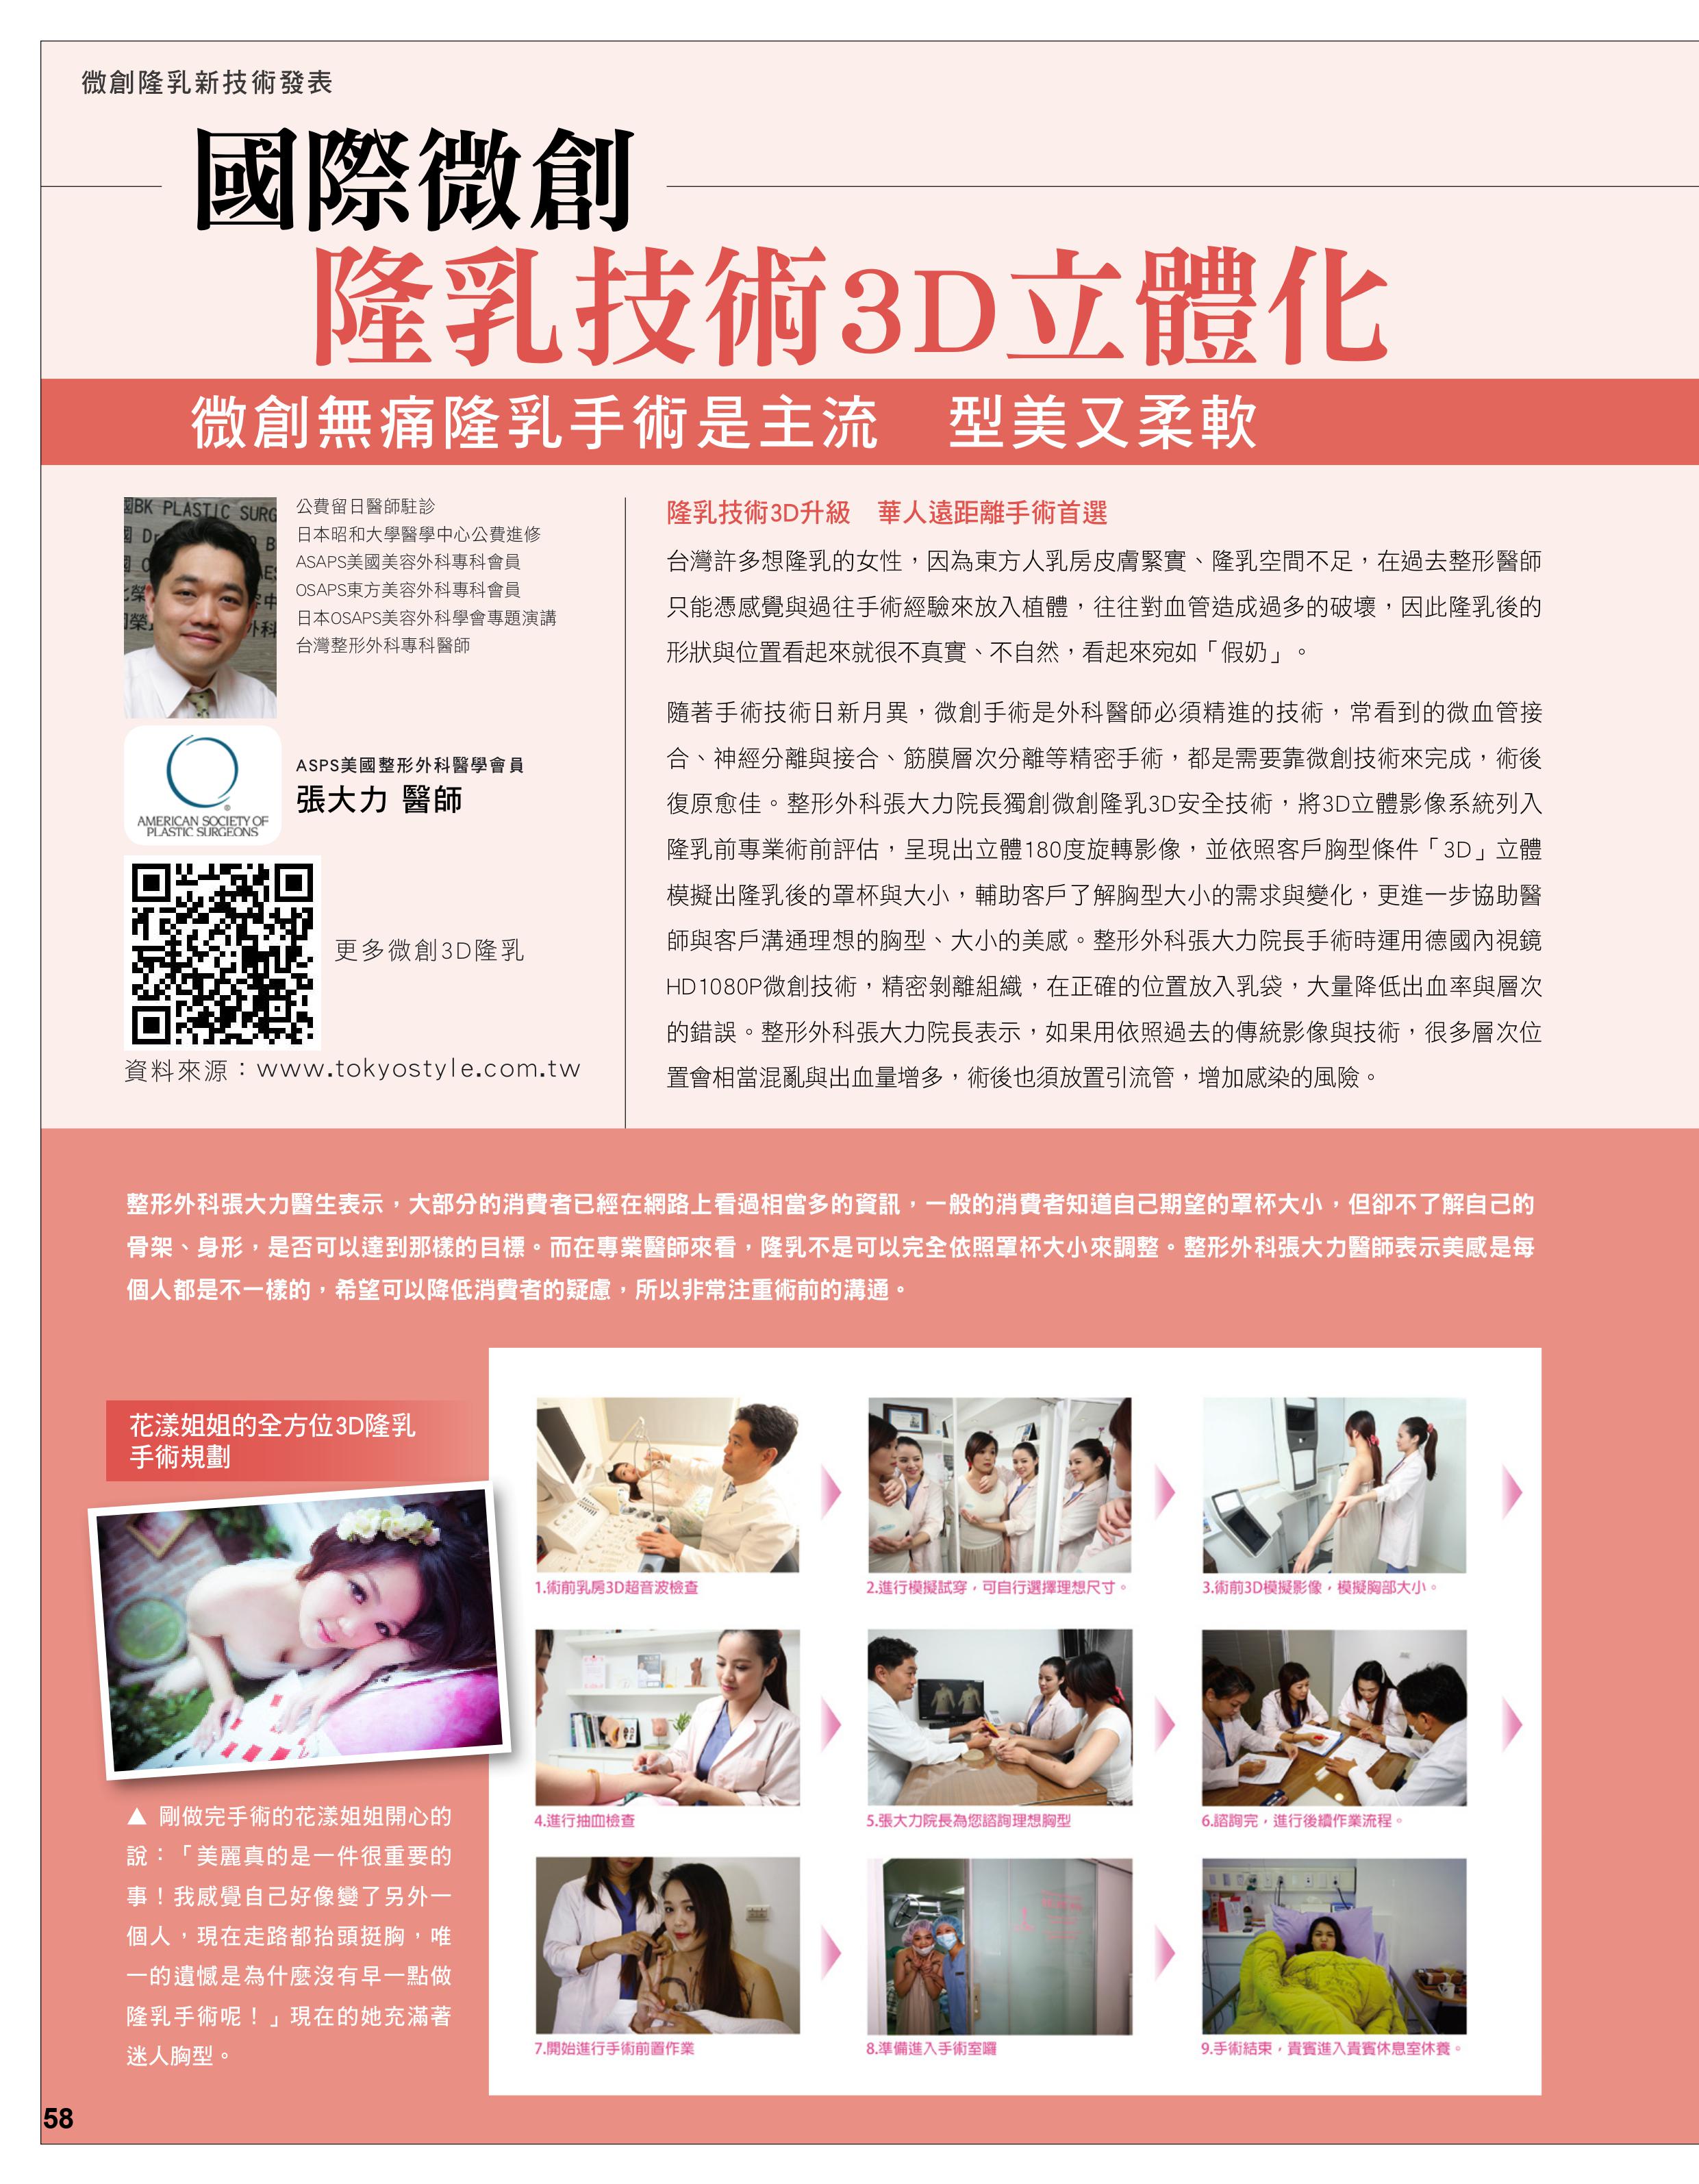 國際微創 隆乳技術3D立體化-雜誌專訪-張大力-整形名醫-東京風采